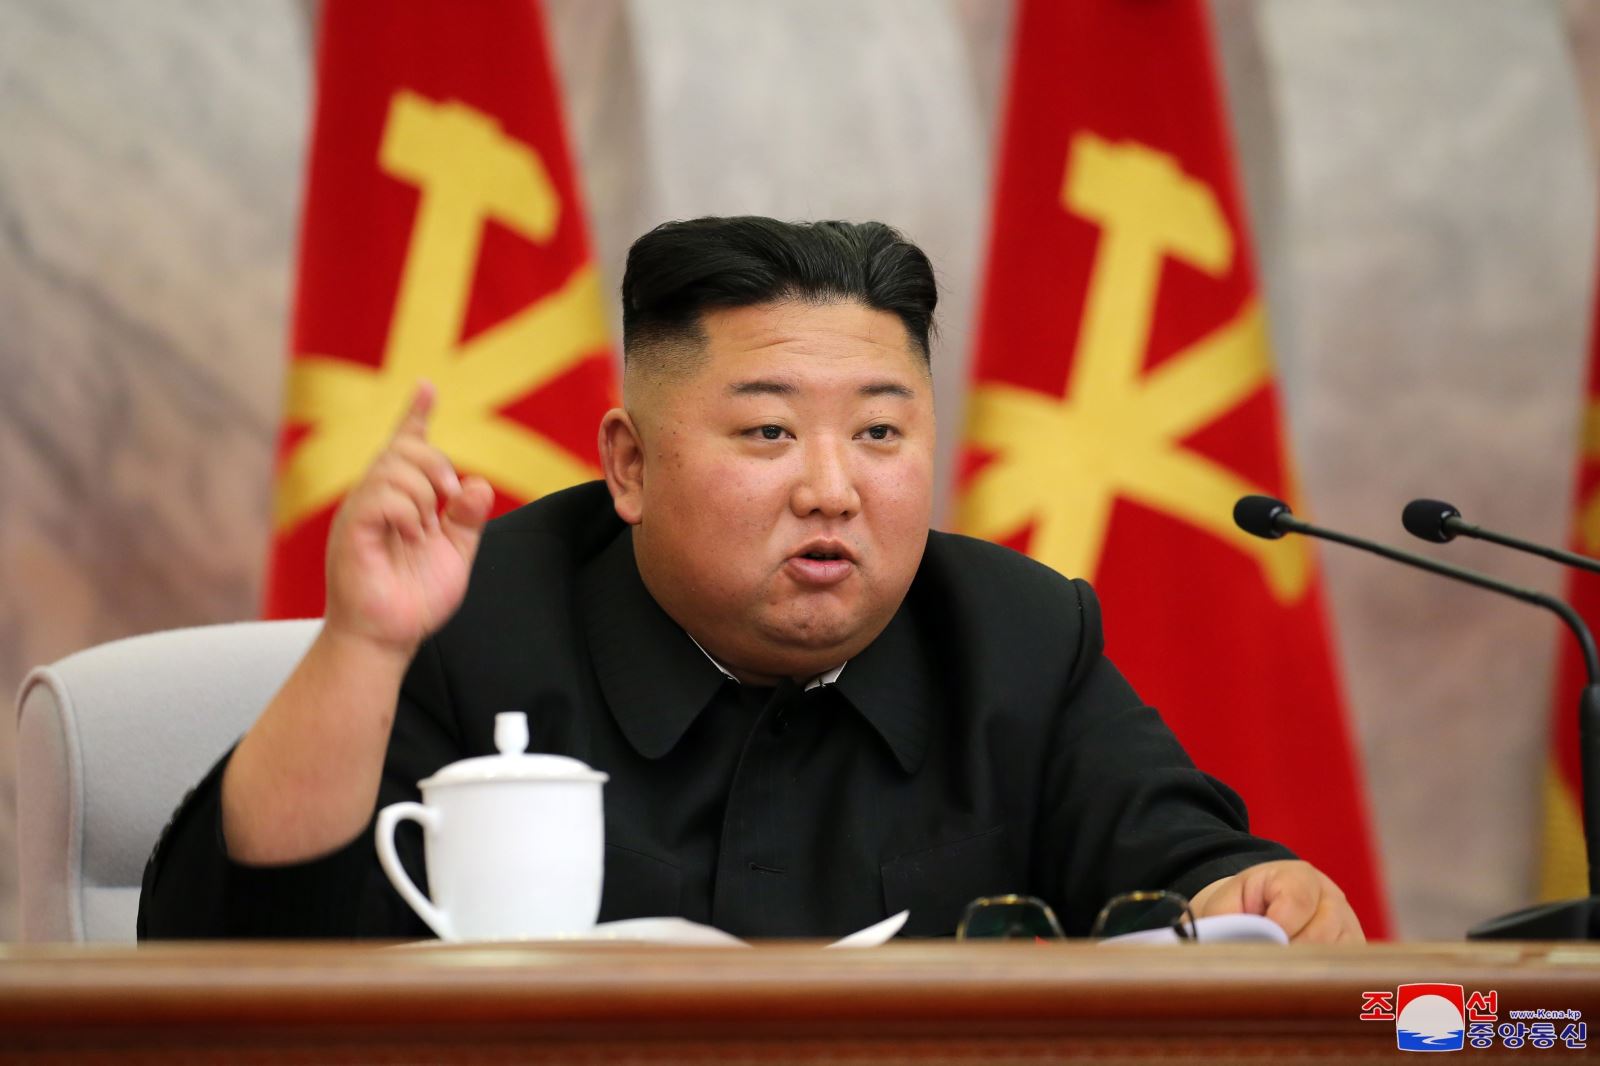 Chủ tịch Triều Tiên Kim Jong-un xuất hiện, xuống thang căng thẳng với Hàn Quốc